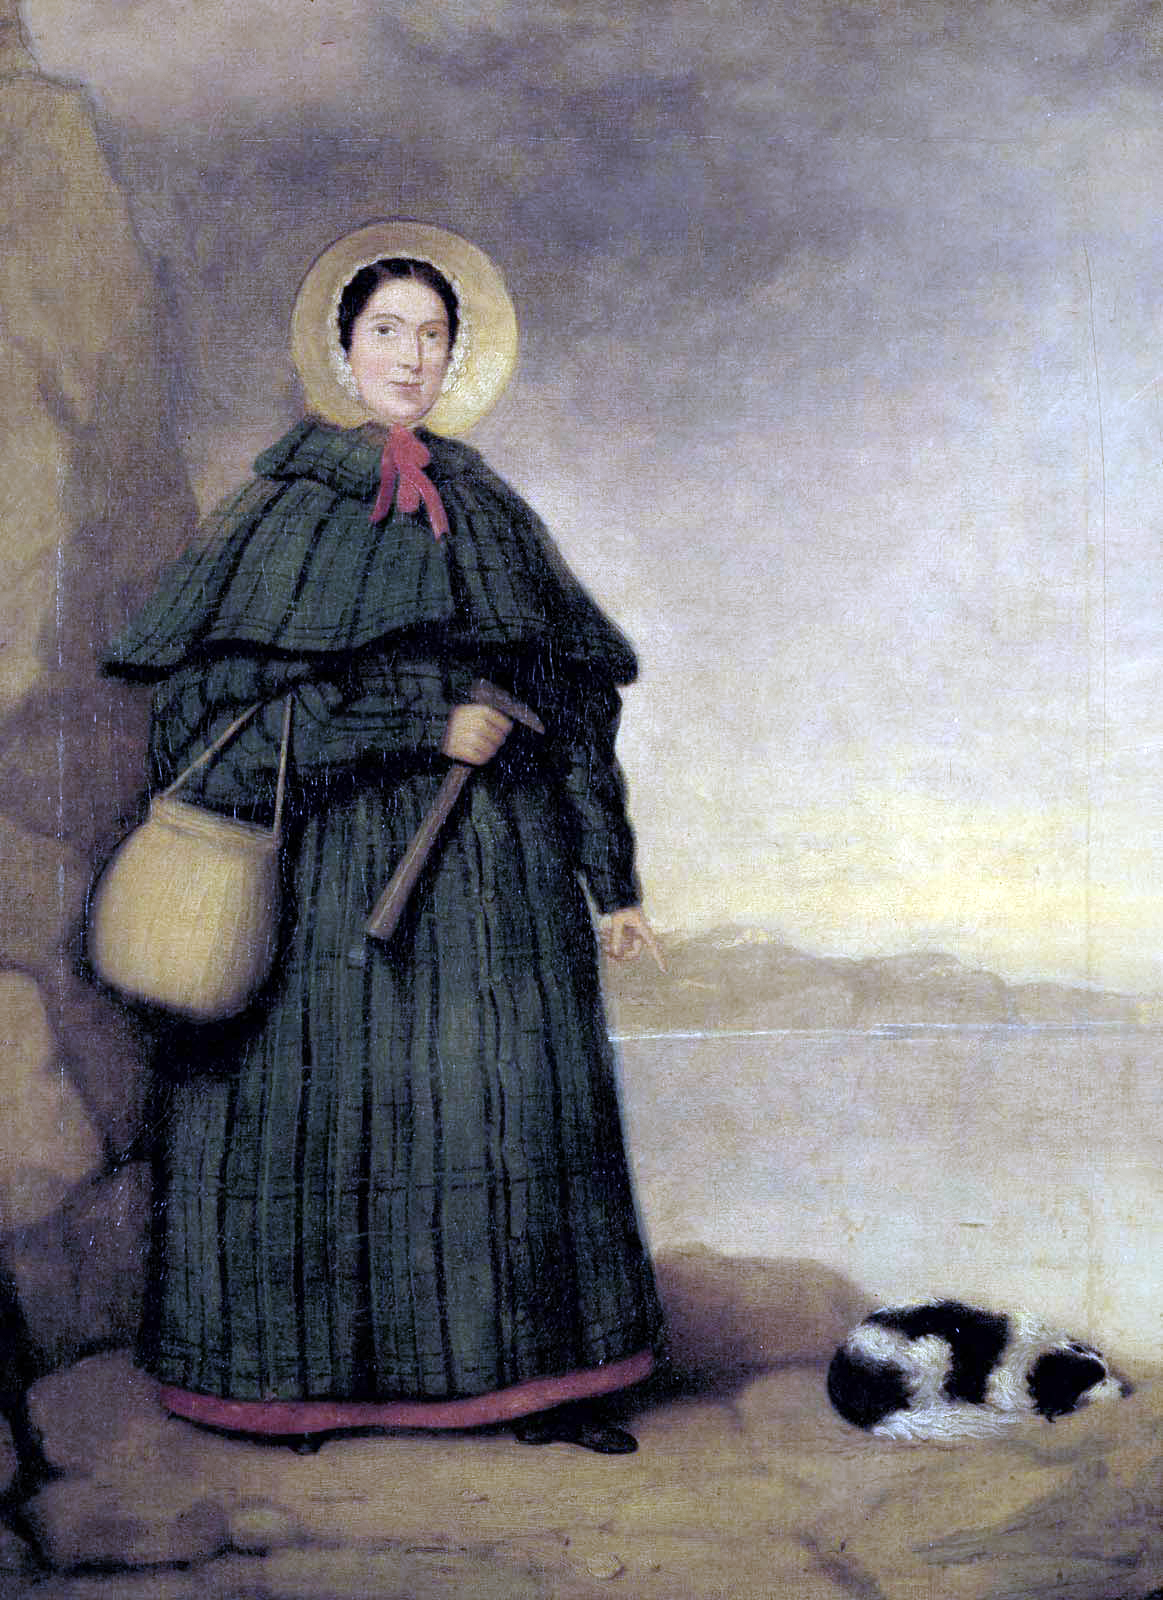 Mary Anning (1799 – 1847), bila je engleska sakupljačica fosila, a njezina otkrića donijela su mnoga nova saznanja u području geologije i paleontologije, iako nikad nije stekla formalno obrazovanje. Njezin brat primijetio je kostur "krokodila" u blizini obiteljskog doma, a Mary je nedugo potom iskopala lubanju i ostatak kostura, koje je prodala potom za nevelik novac. Poslije je ustanovljeno da se radilo o Ihtiosauru, morskom reptilu iz razdoblja jure. Tim otkrićem je počela njezina karijera sakupljačice fosila, ali i znanstvenice. Kao protestantica i žena nije bila osobito dobrodošla u akademskoj zajednici, pa tako nije mogla biti primljena na nijedno sveučilište, no ipak su je i stručnjaci tražili za savjete o anatomiji fosila. 